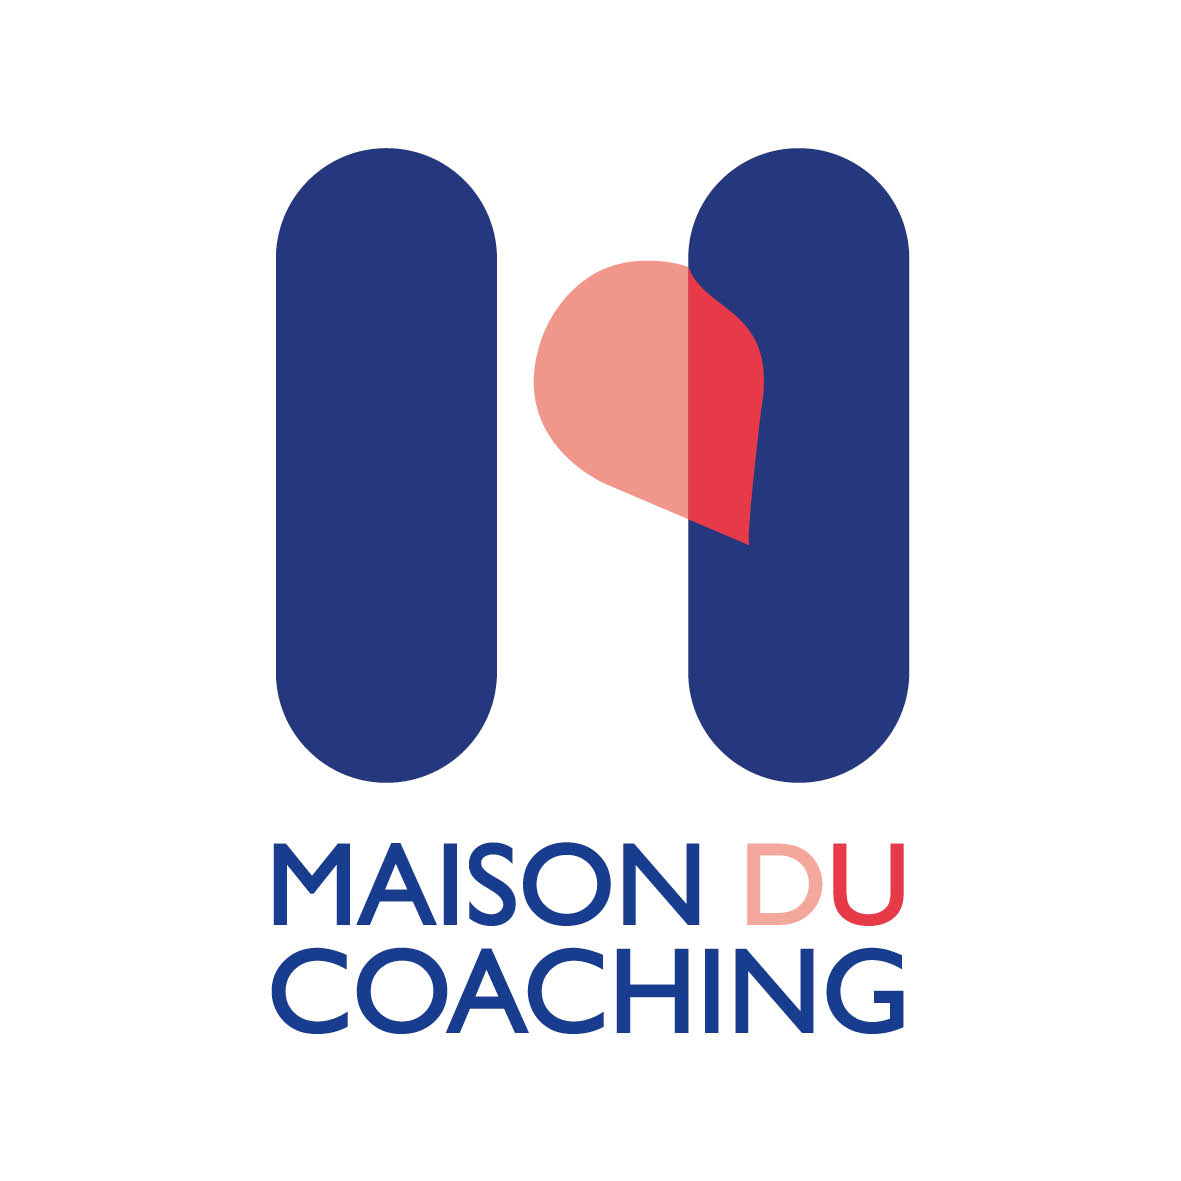 MAISON DU COACHING (MDC)